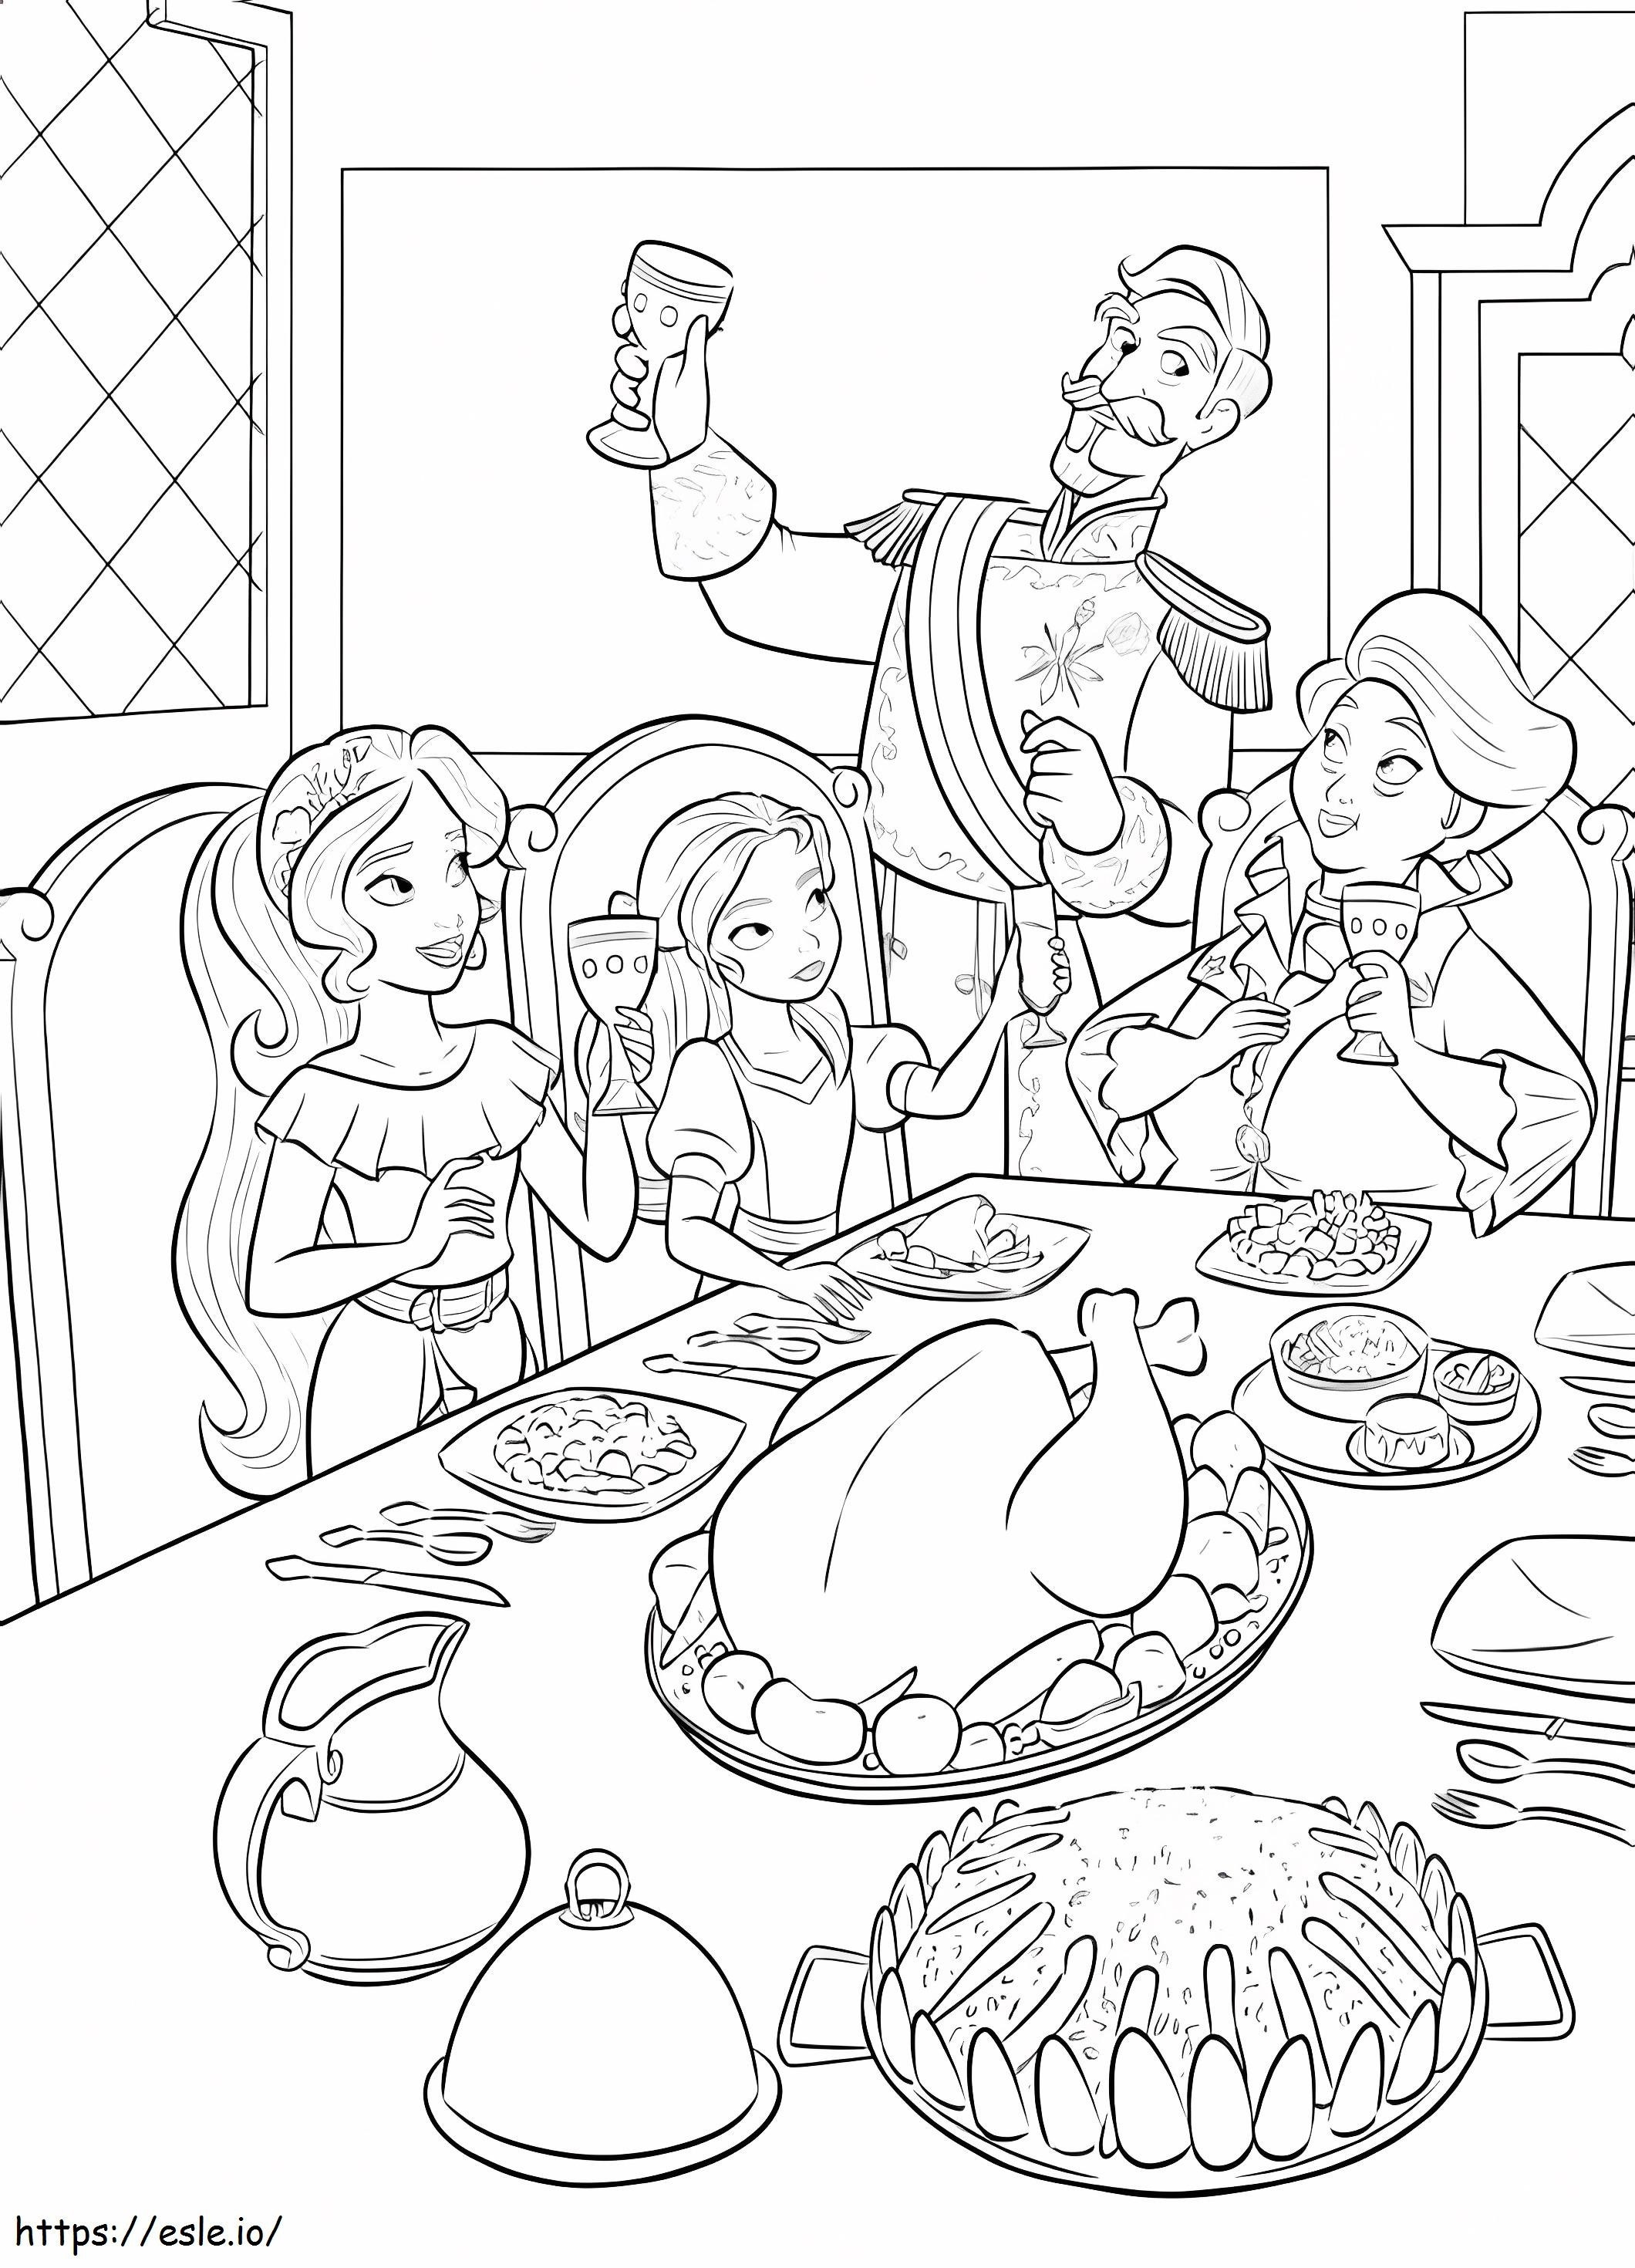 Księżniczka Elena i rodzina jedzą kolorowanka